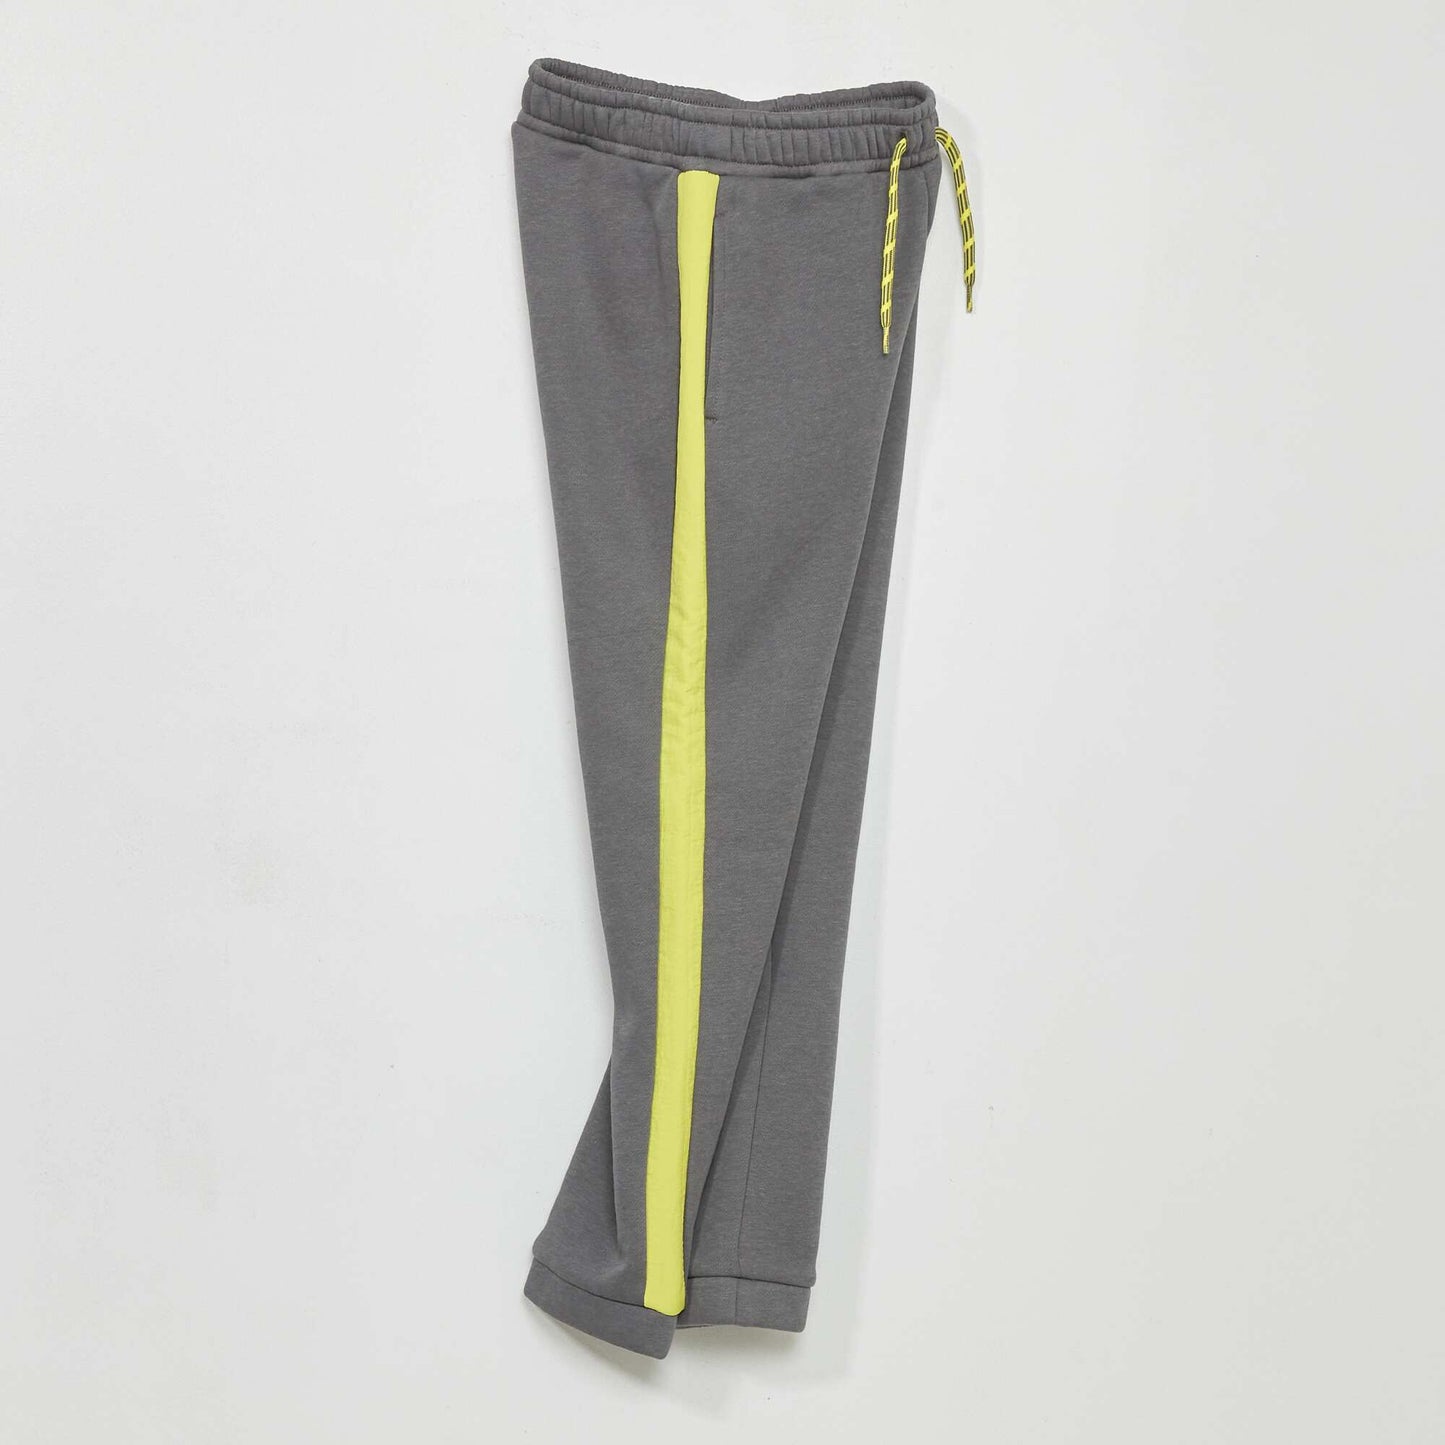 Pantalon jogging avec bandes contrastantes Gris/vert